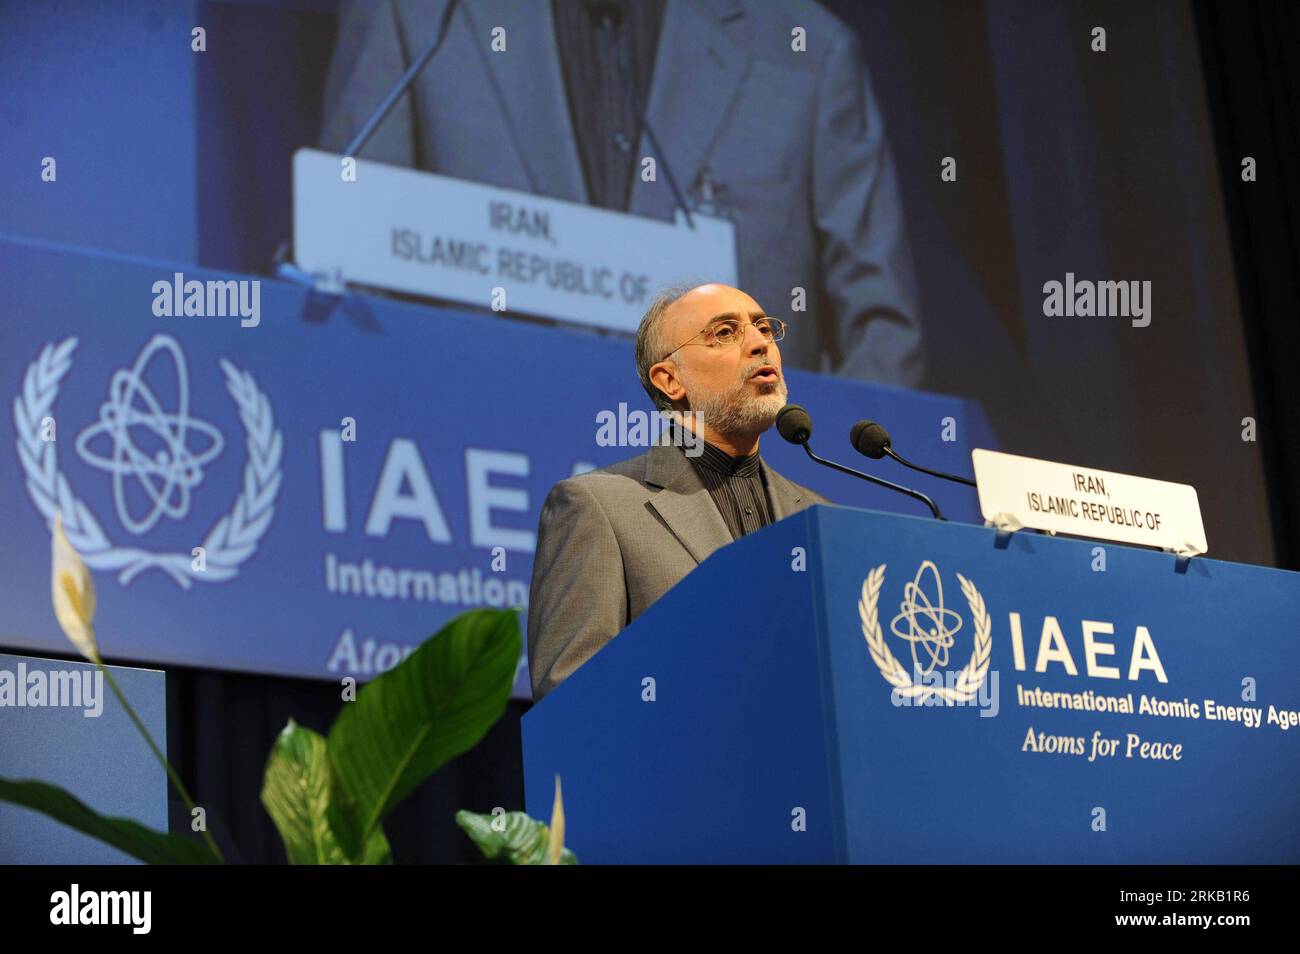 Bildnummer : 54445128 Datum : 20.09.2010 Copyright : imago/Xinhua (100920) -- VIENNE, 20 septembre 2010 (Xinhua) -- Ali Akbar Salehi, vice-président iranien et chef de l'Organisation iranienne de l'énergie atomique, s'adresse à la 54e Conférence générale de l'Agence internationale de l'énergie atomique (AIEA) à Vienne, capitale de l'Autriche, le 20 septembre 2010. La 54e Conférence générale de l'AIEA s'est ouverte lundi, avec la participation de représentants de 151 pays. (Xinhua/Xu Liang) (gj) AUTRICHE-VIENNE-AIEA-CONFÉRENCE GÉNÉRALE-OUVERTURE PUBLICATIONxNOTxINxCHN People Politik Behörde Atomenergie Atomenergiebehörd Banque D'Images